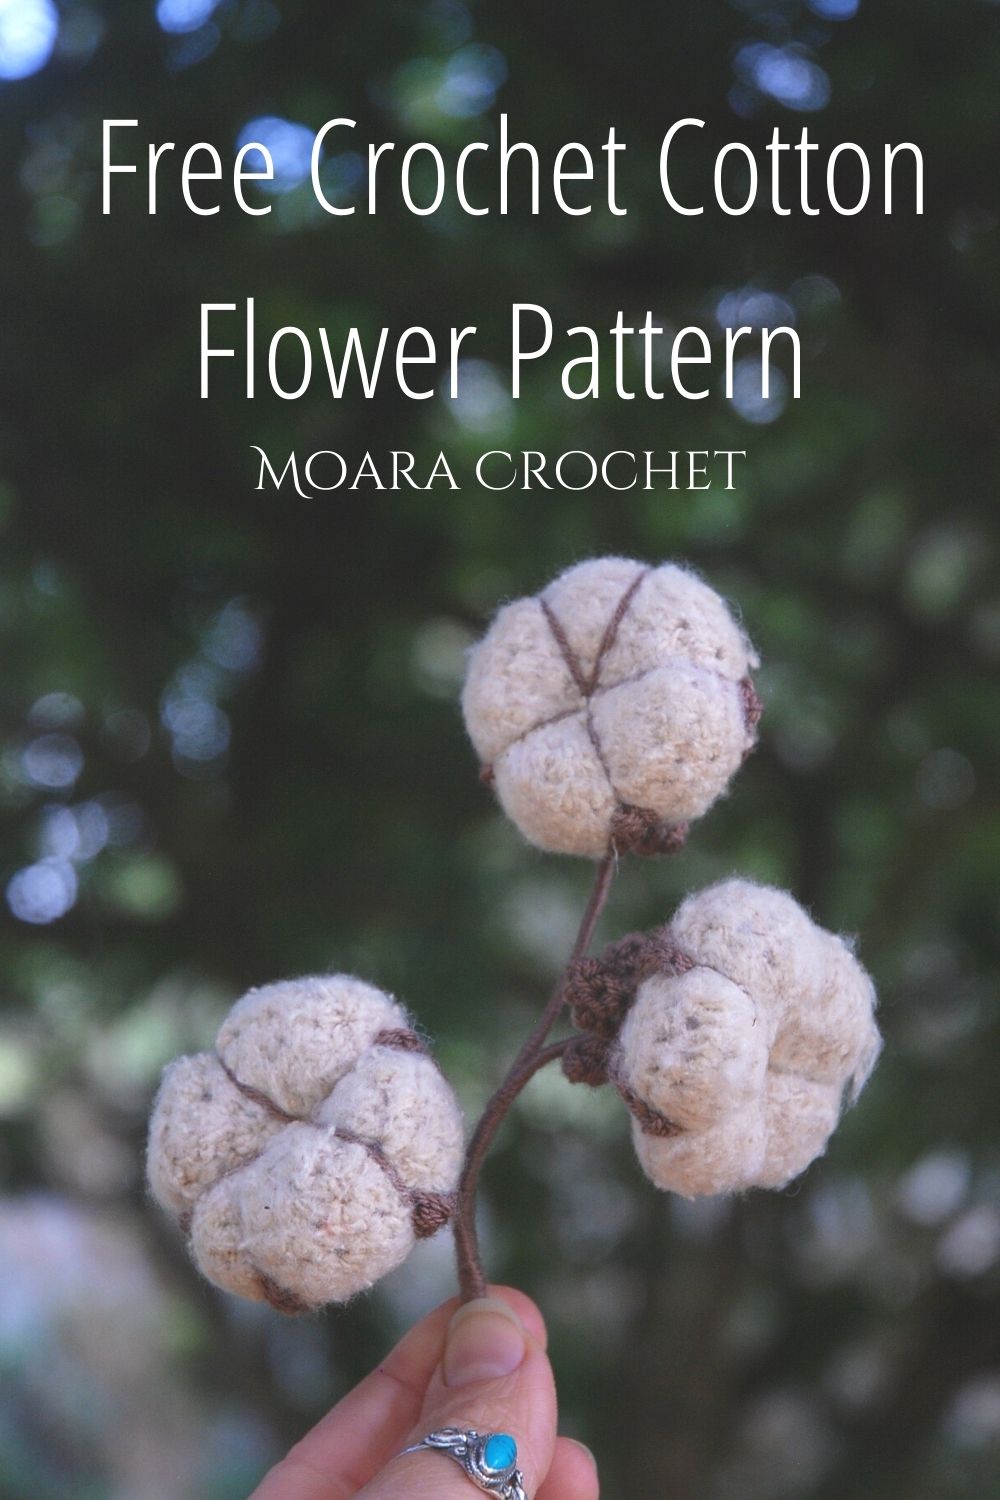 Free Crochet Cotton Flower Pattern with Moara Crochet